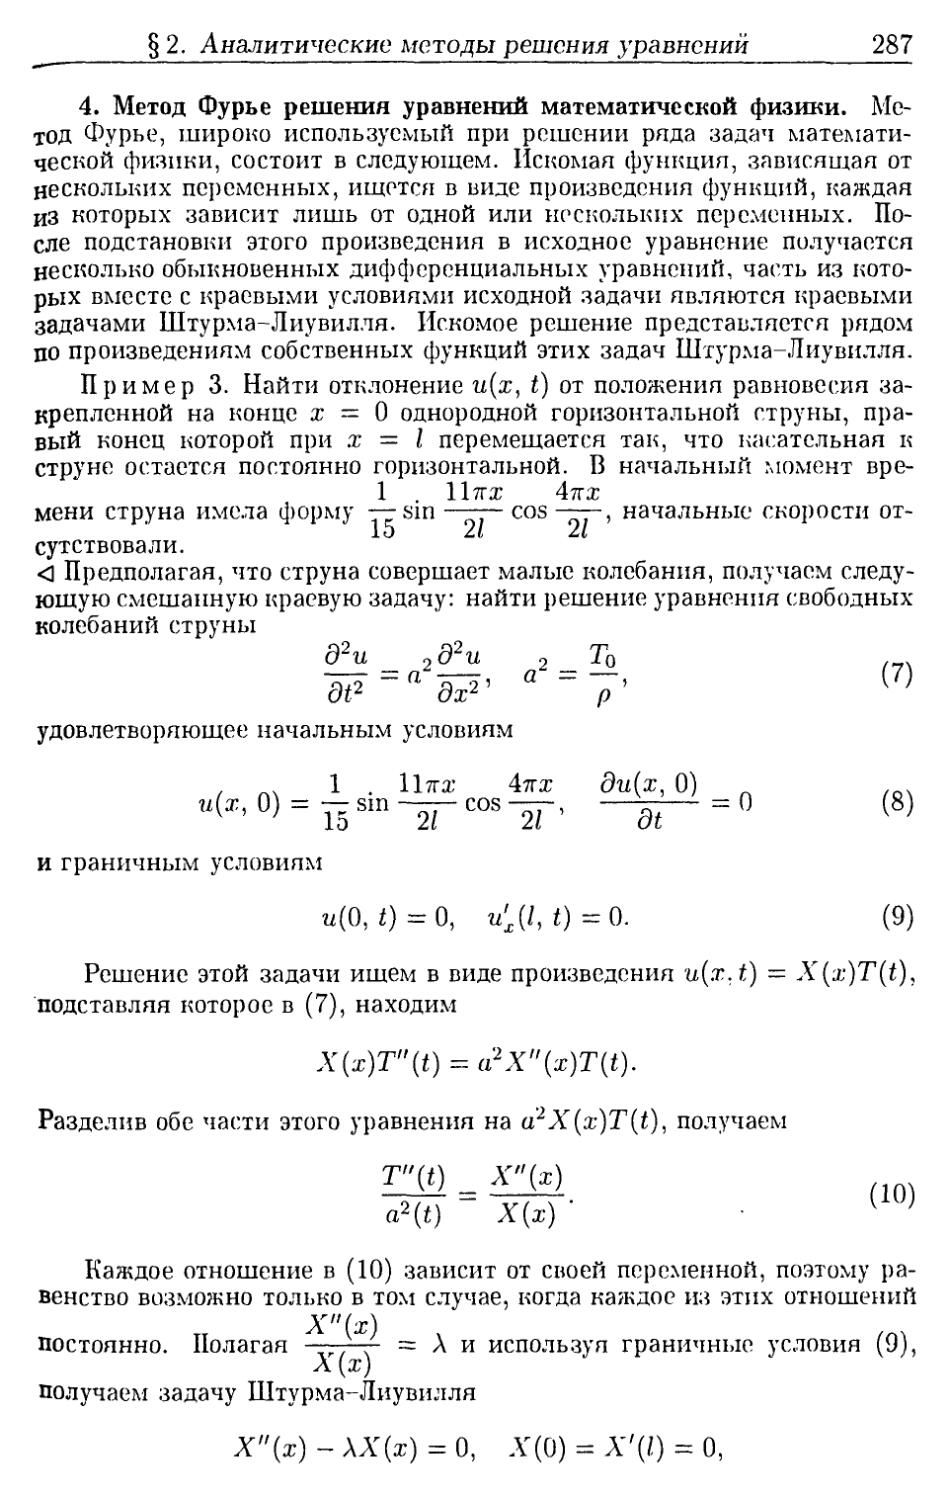 4. Метод Фурье решения уравнений математической физики